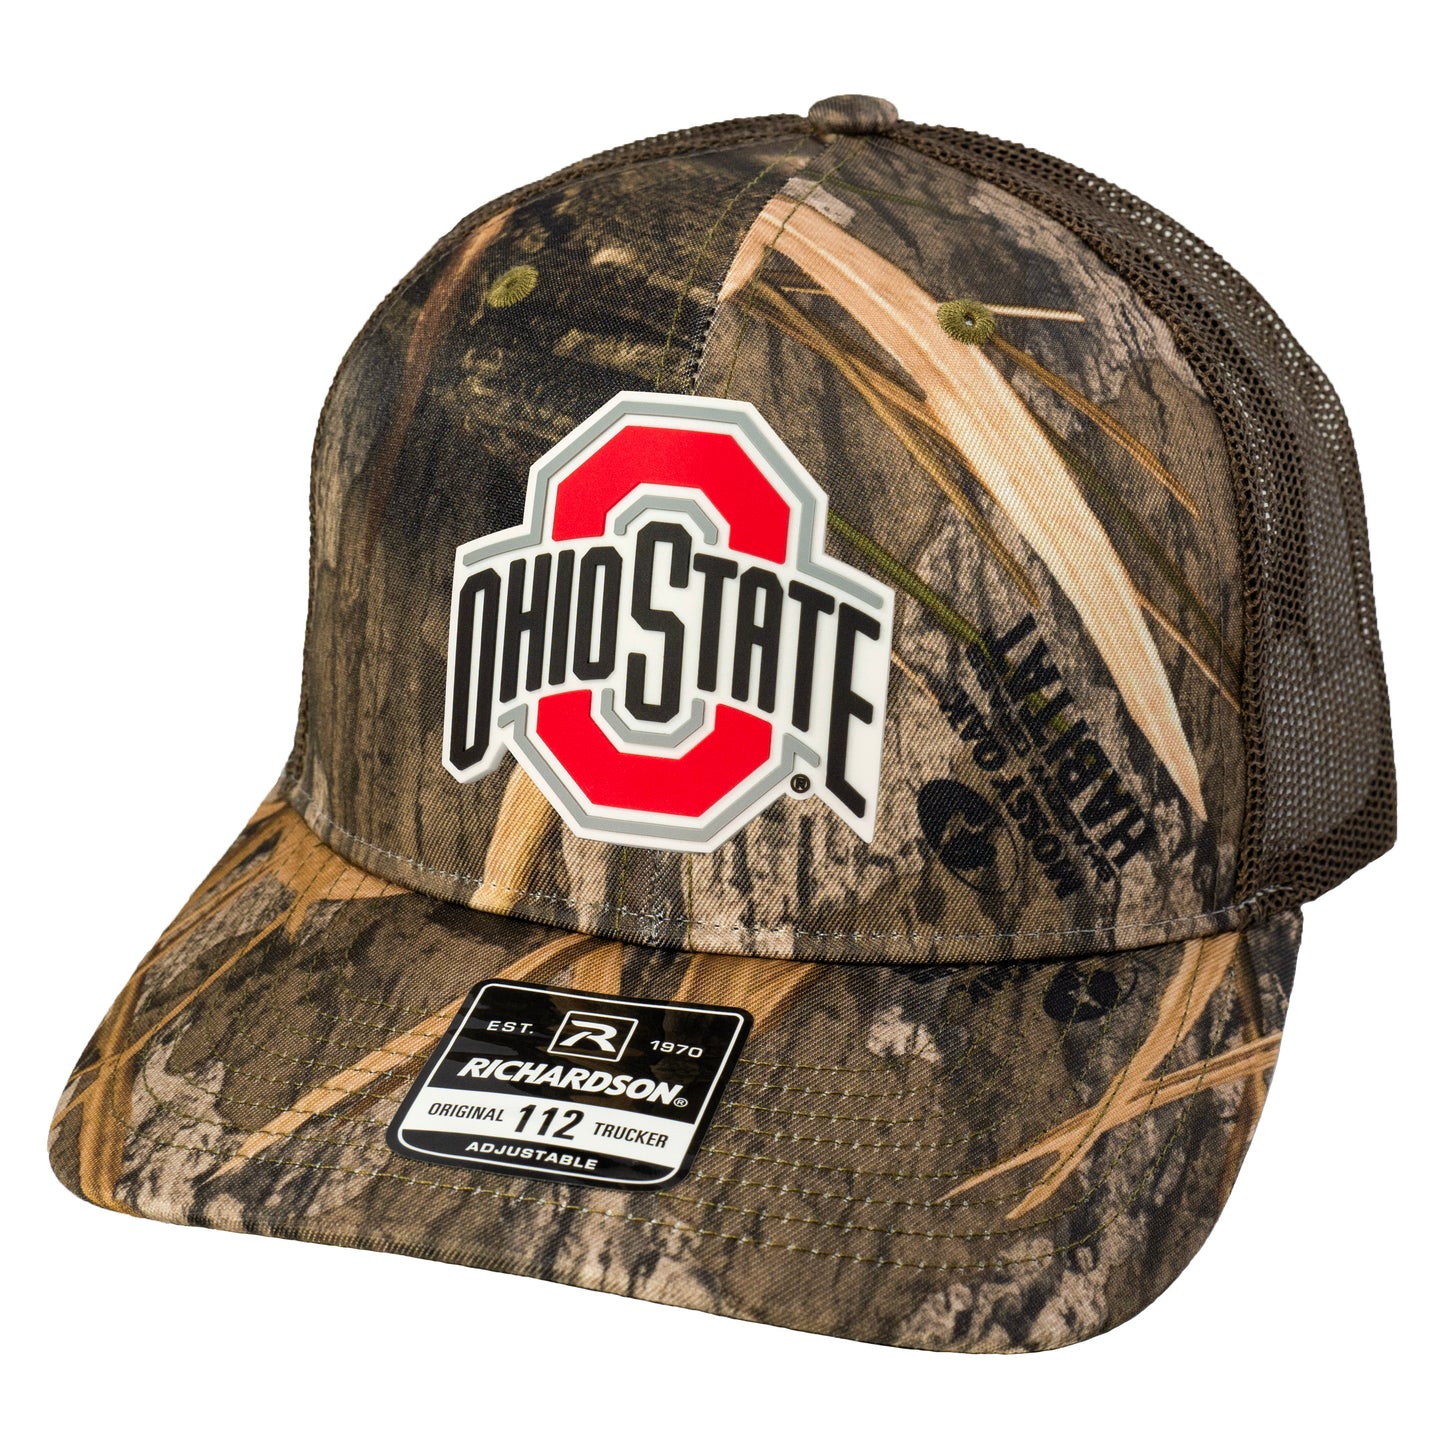 Ohio State Buckeyes 3D Patterned Snapback Trucker Hat-Mossy Oak Habitat/ Brown - Ten Gallon Hat Co.